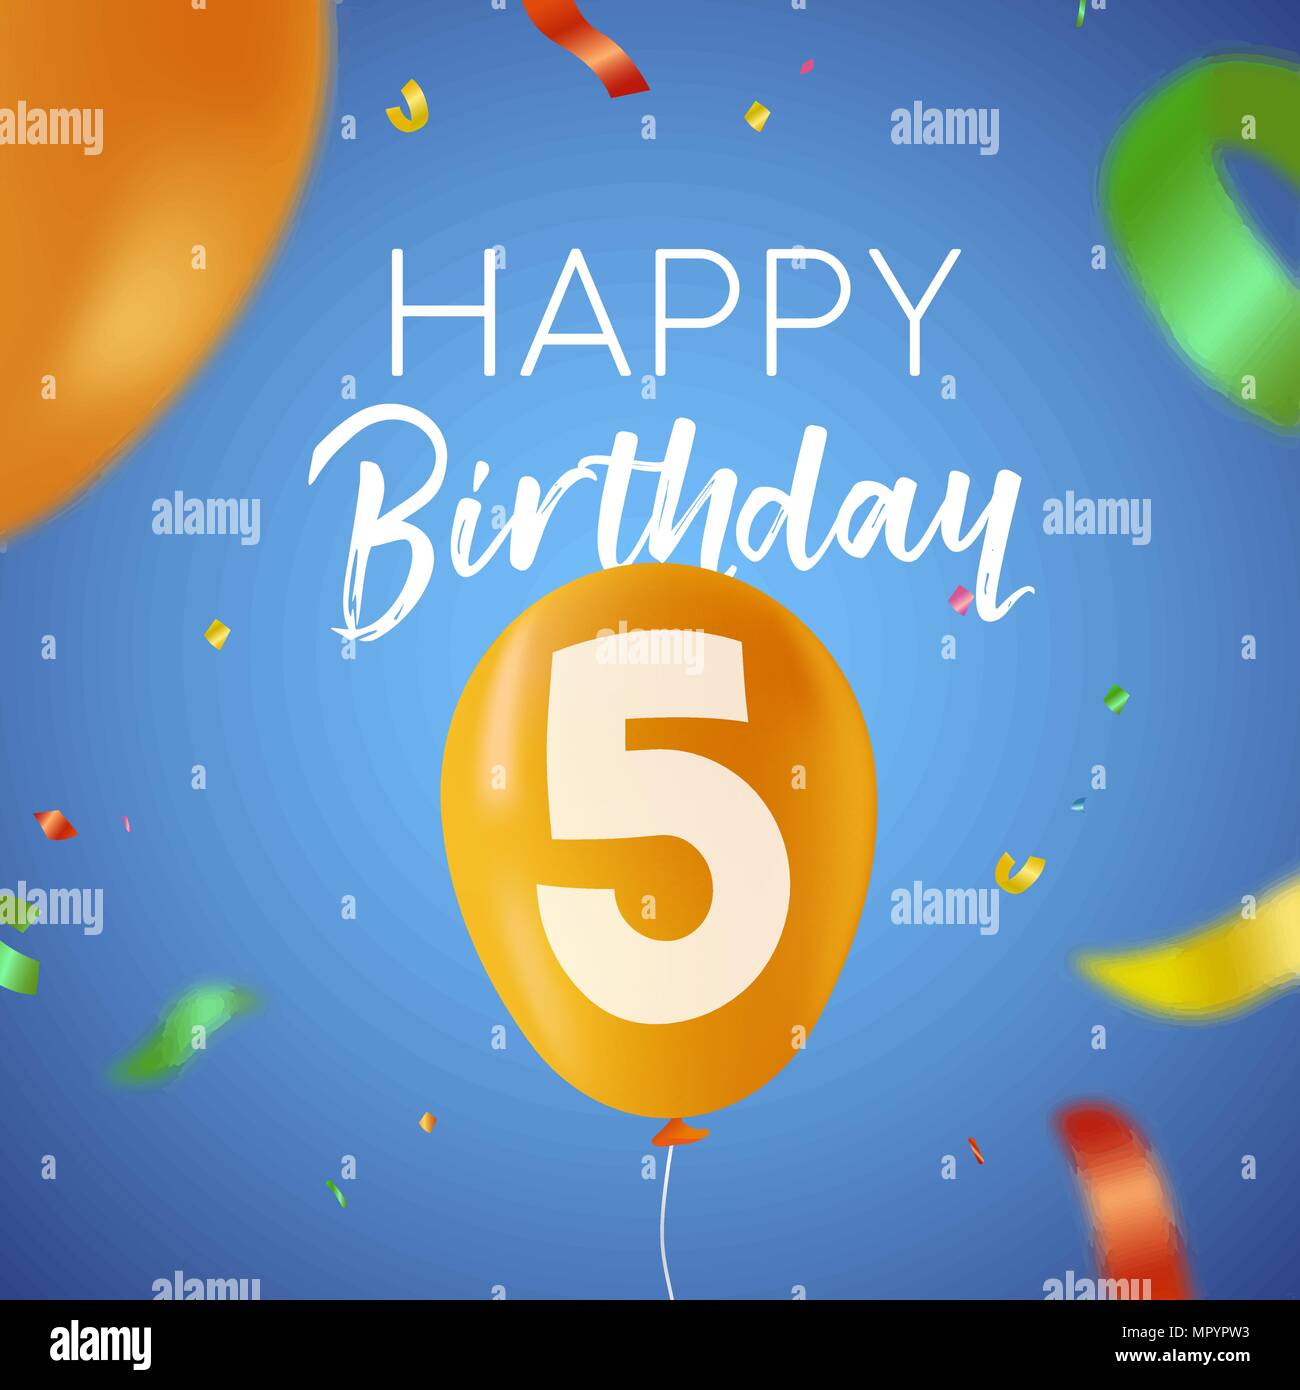 Happy Birthday 5 fünf Jahre Spaß Design mit Ballon Anzahl und bunte Konfetti Dekoration. Ideal für Party Einladung oder Grußkarte. EPS 10 Vektor Stock Vektor